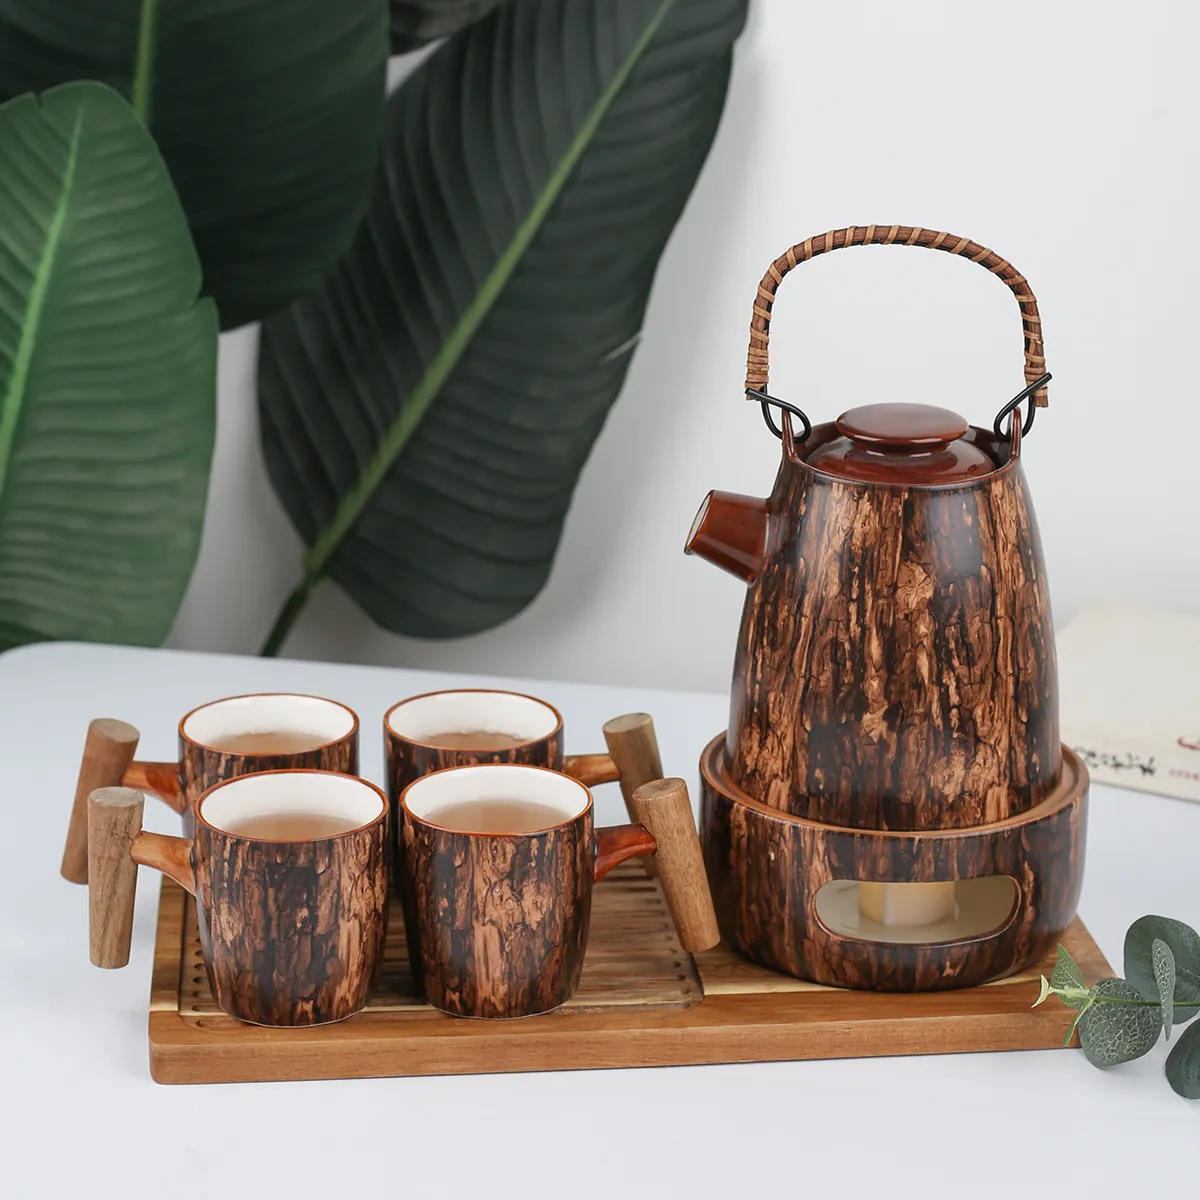 Juego de café de cerámica con forma de madera especial, bandeja con soporte, calentador, tetera de porcelana, taza de té con mango de madera personalizado